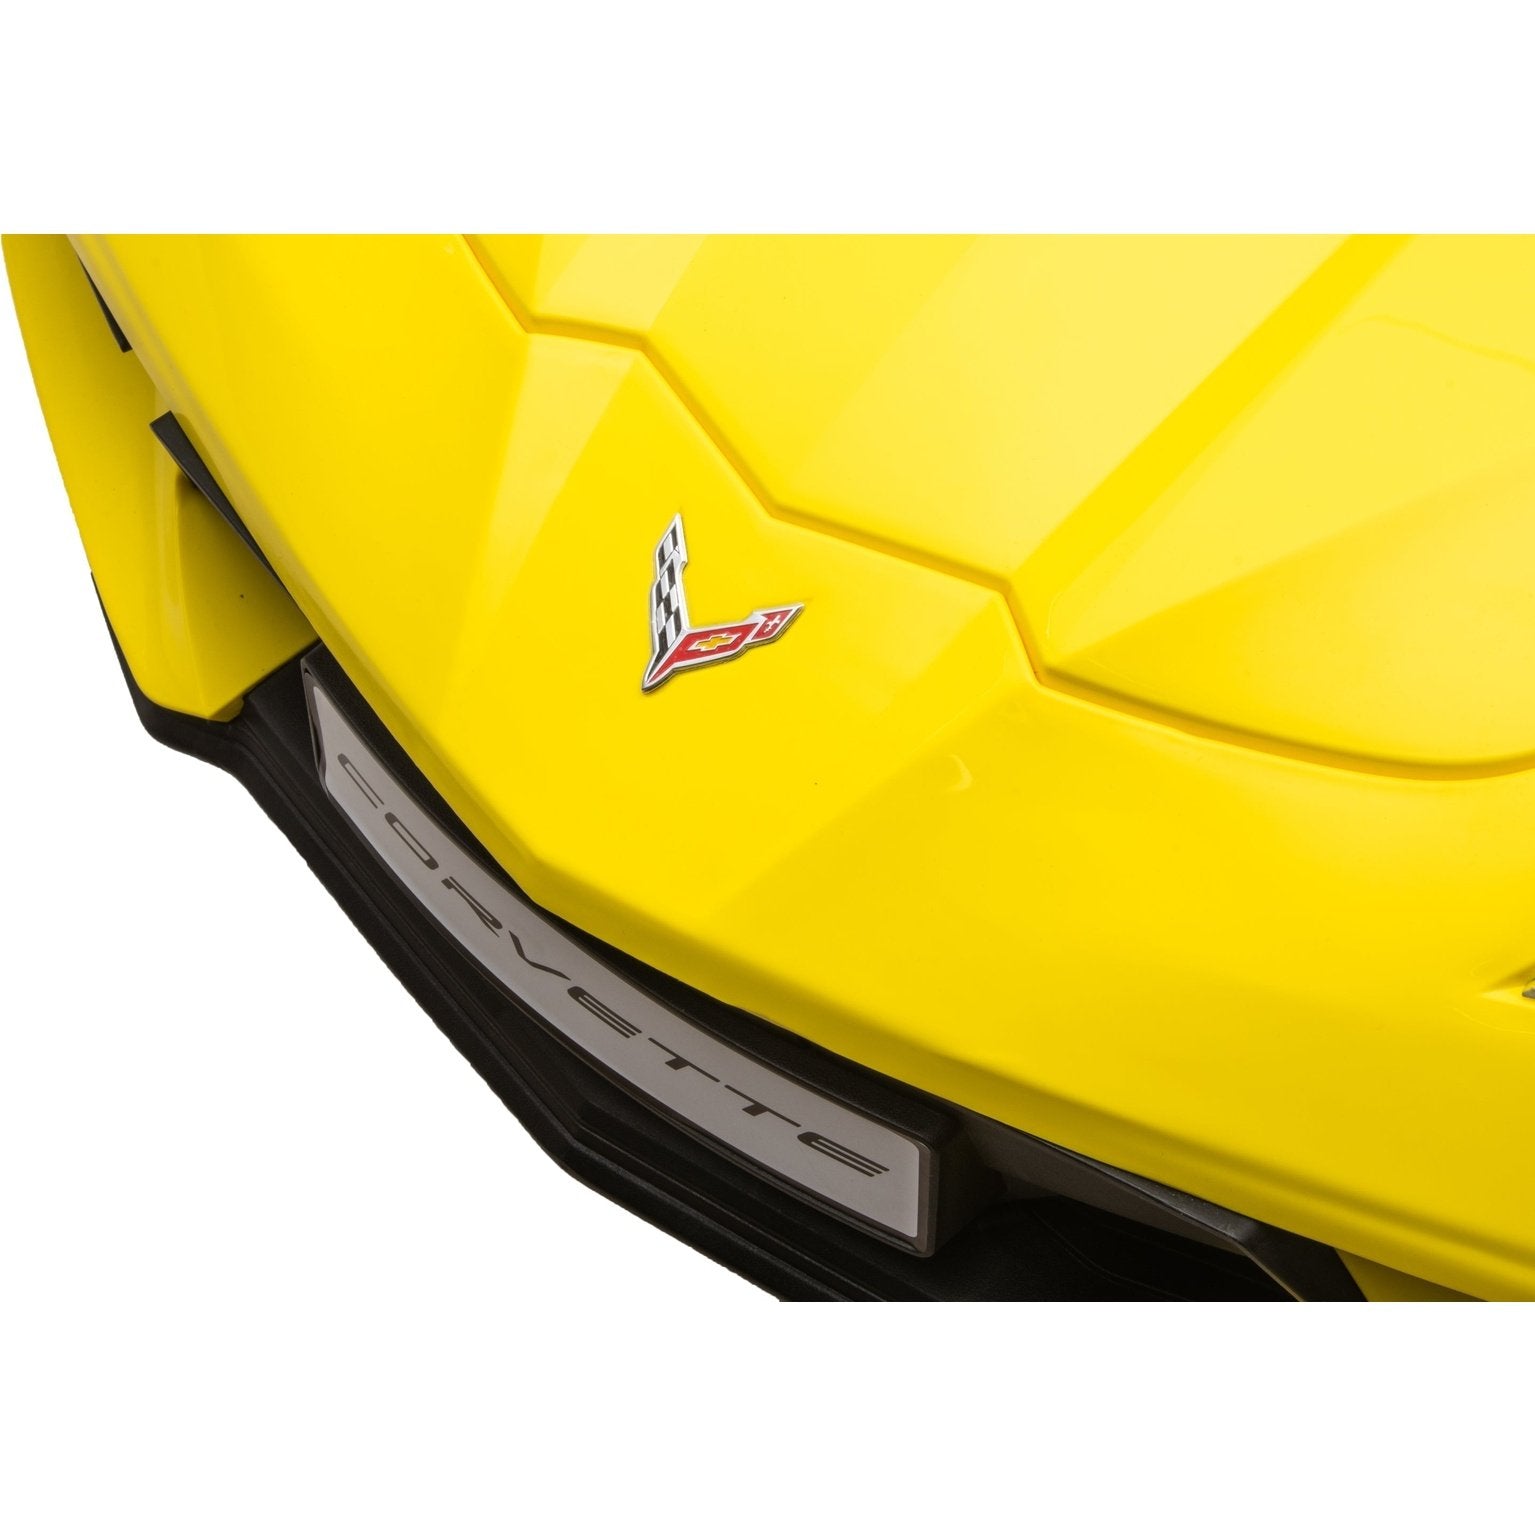 24V Chevrolet Corvette C8 2 Seater Ride on Car SpadezStore